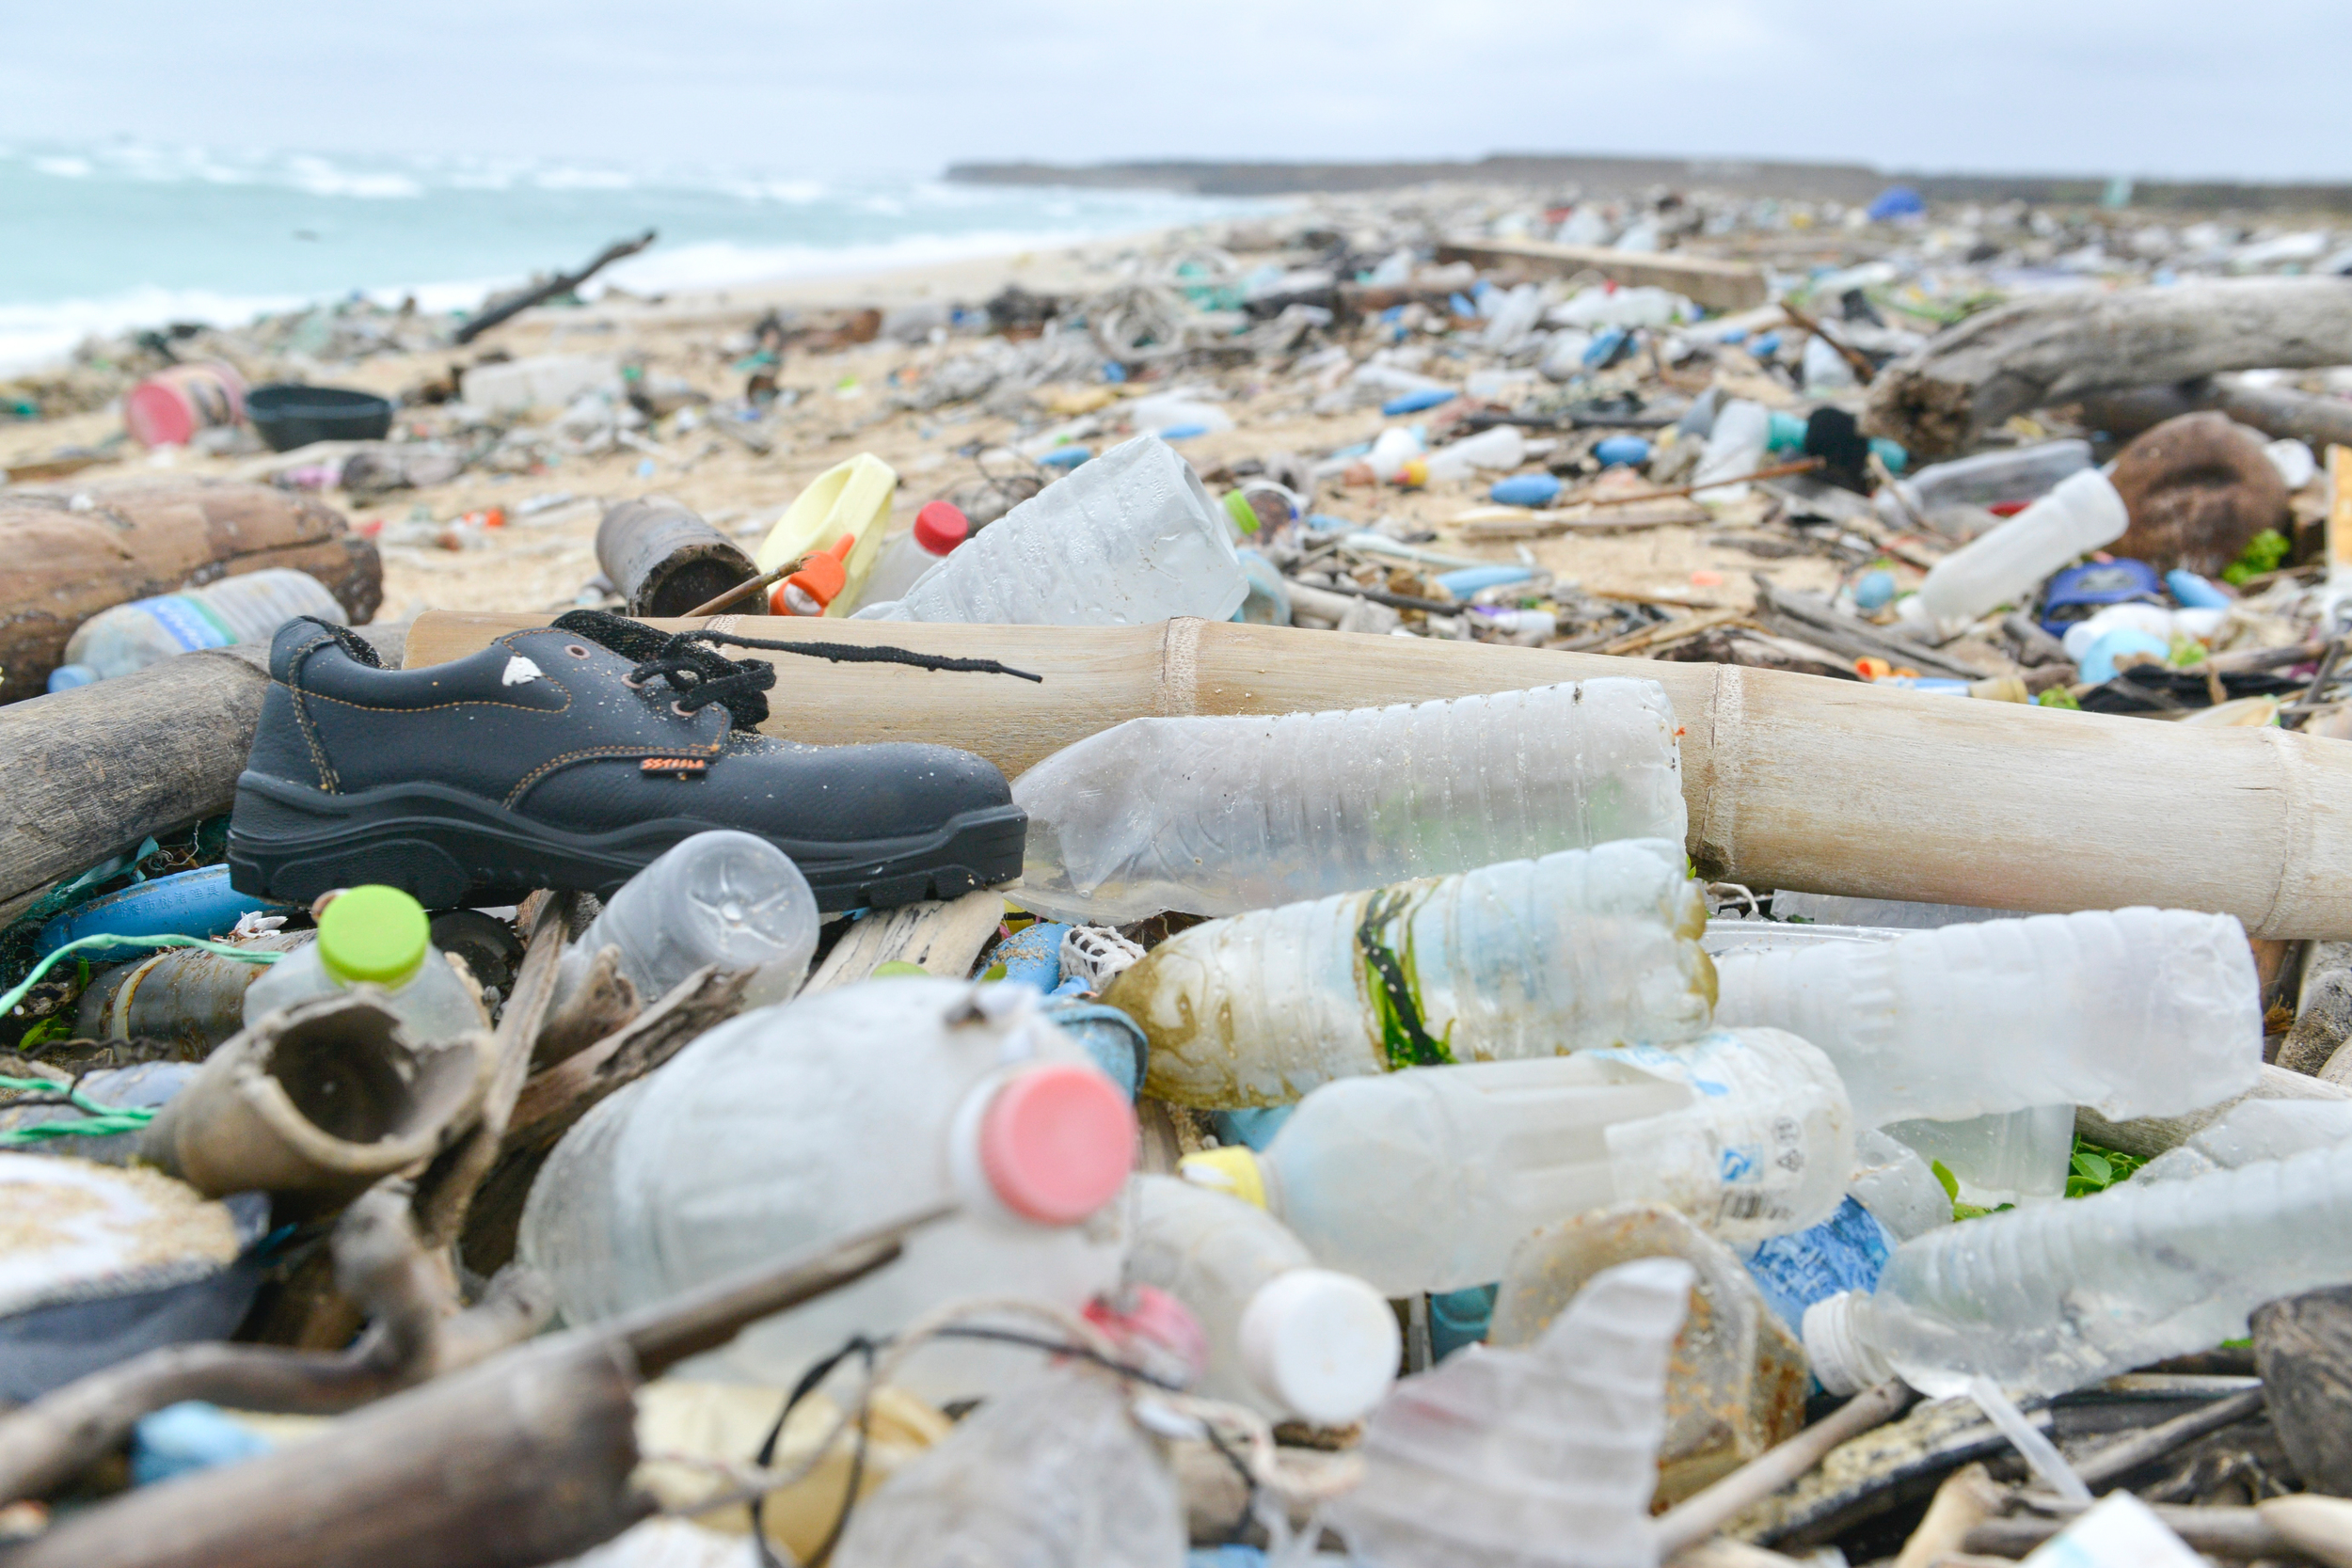 2017年綠色和平與荒野保護協會等在地團體，至澎湖進行淨灘行動，看見當地海灘因東北季風及洋流流向，布滿來自臺灣及其他地區的垃圾，塑膠污染問題嚴重。